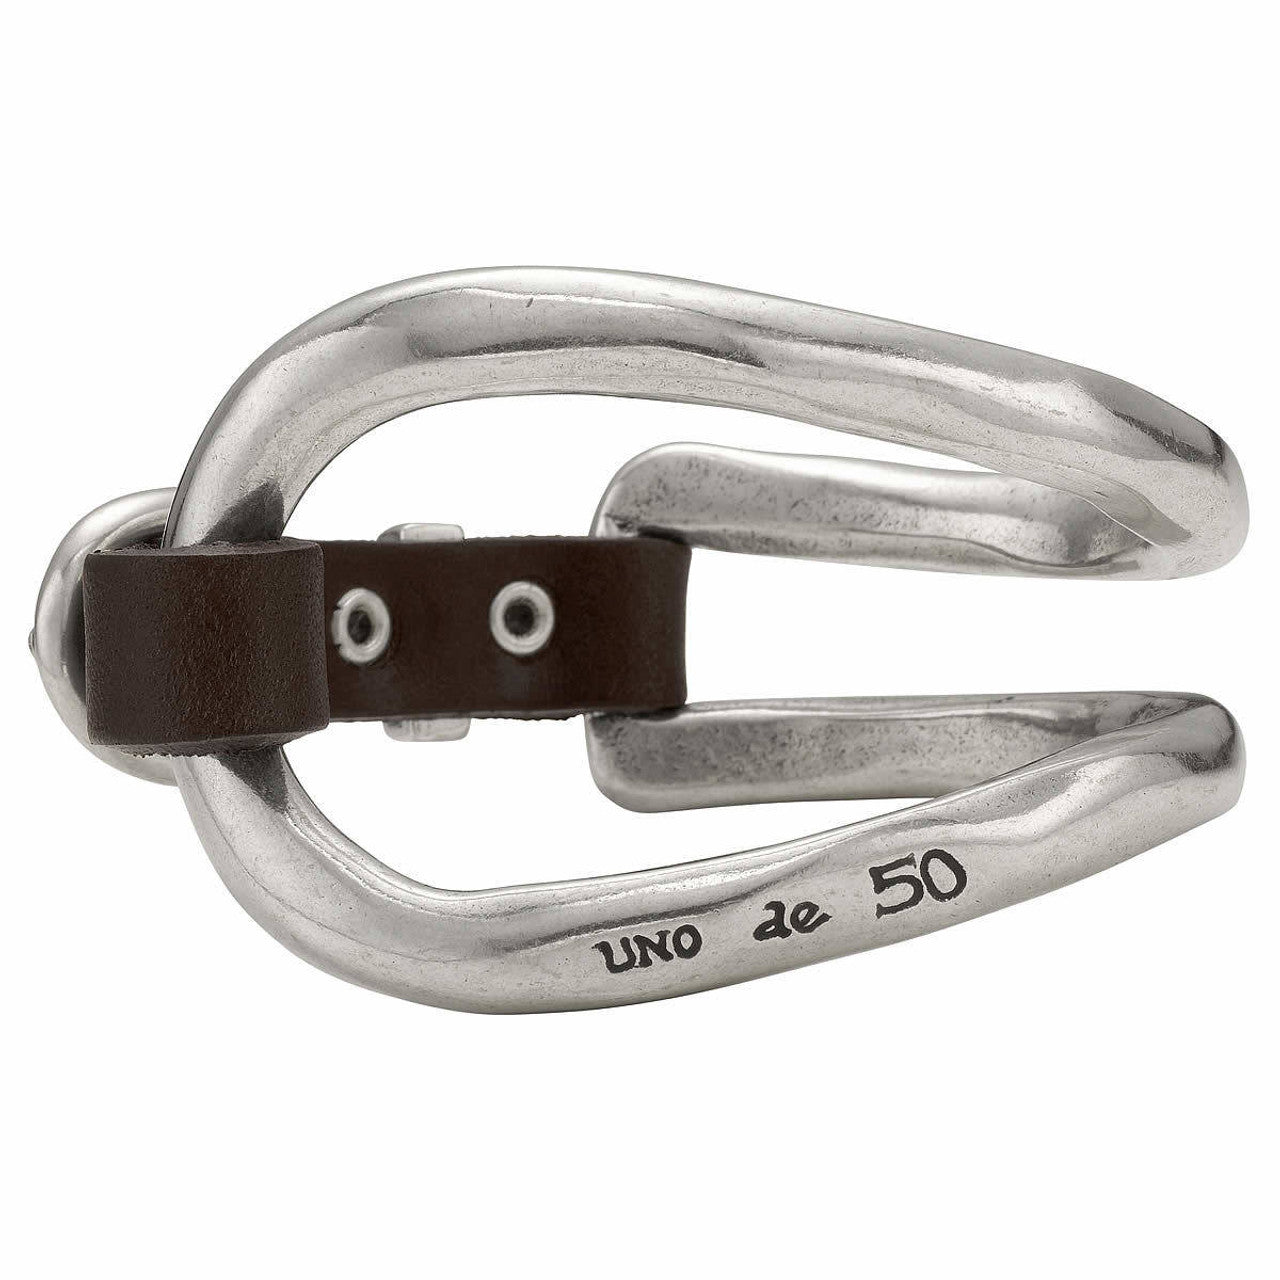 Unode50- Bite bracelet silver